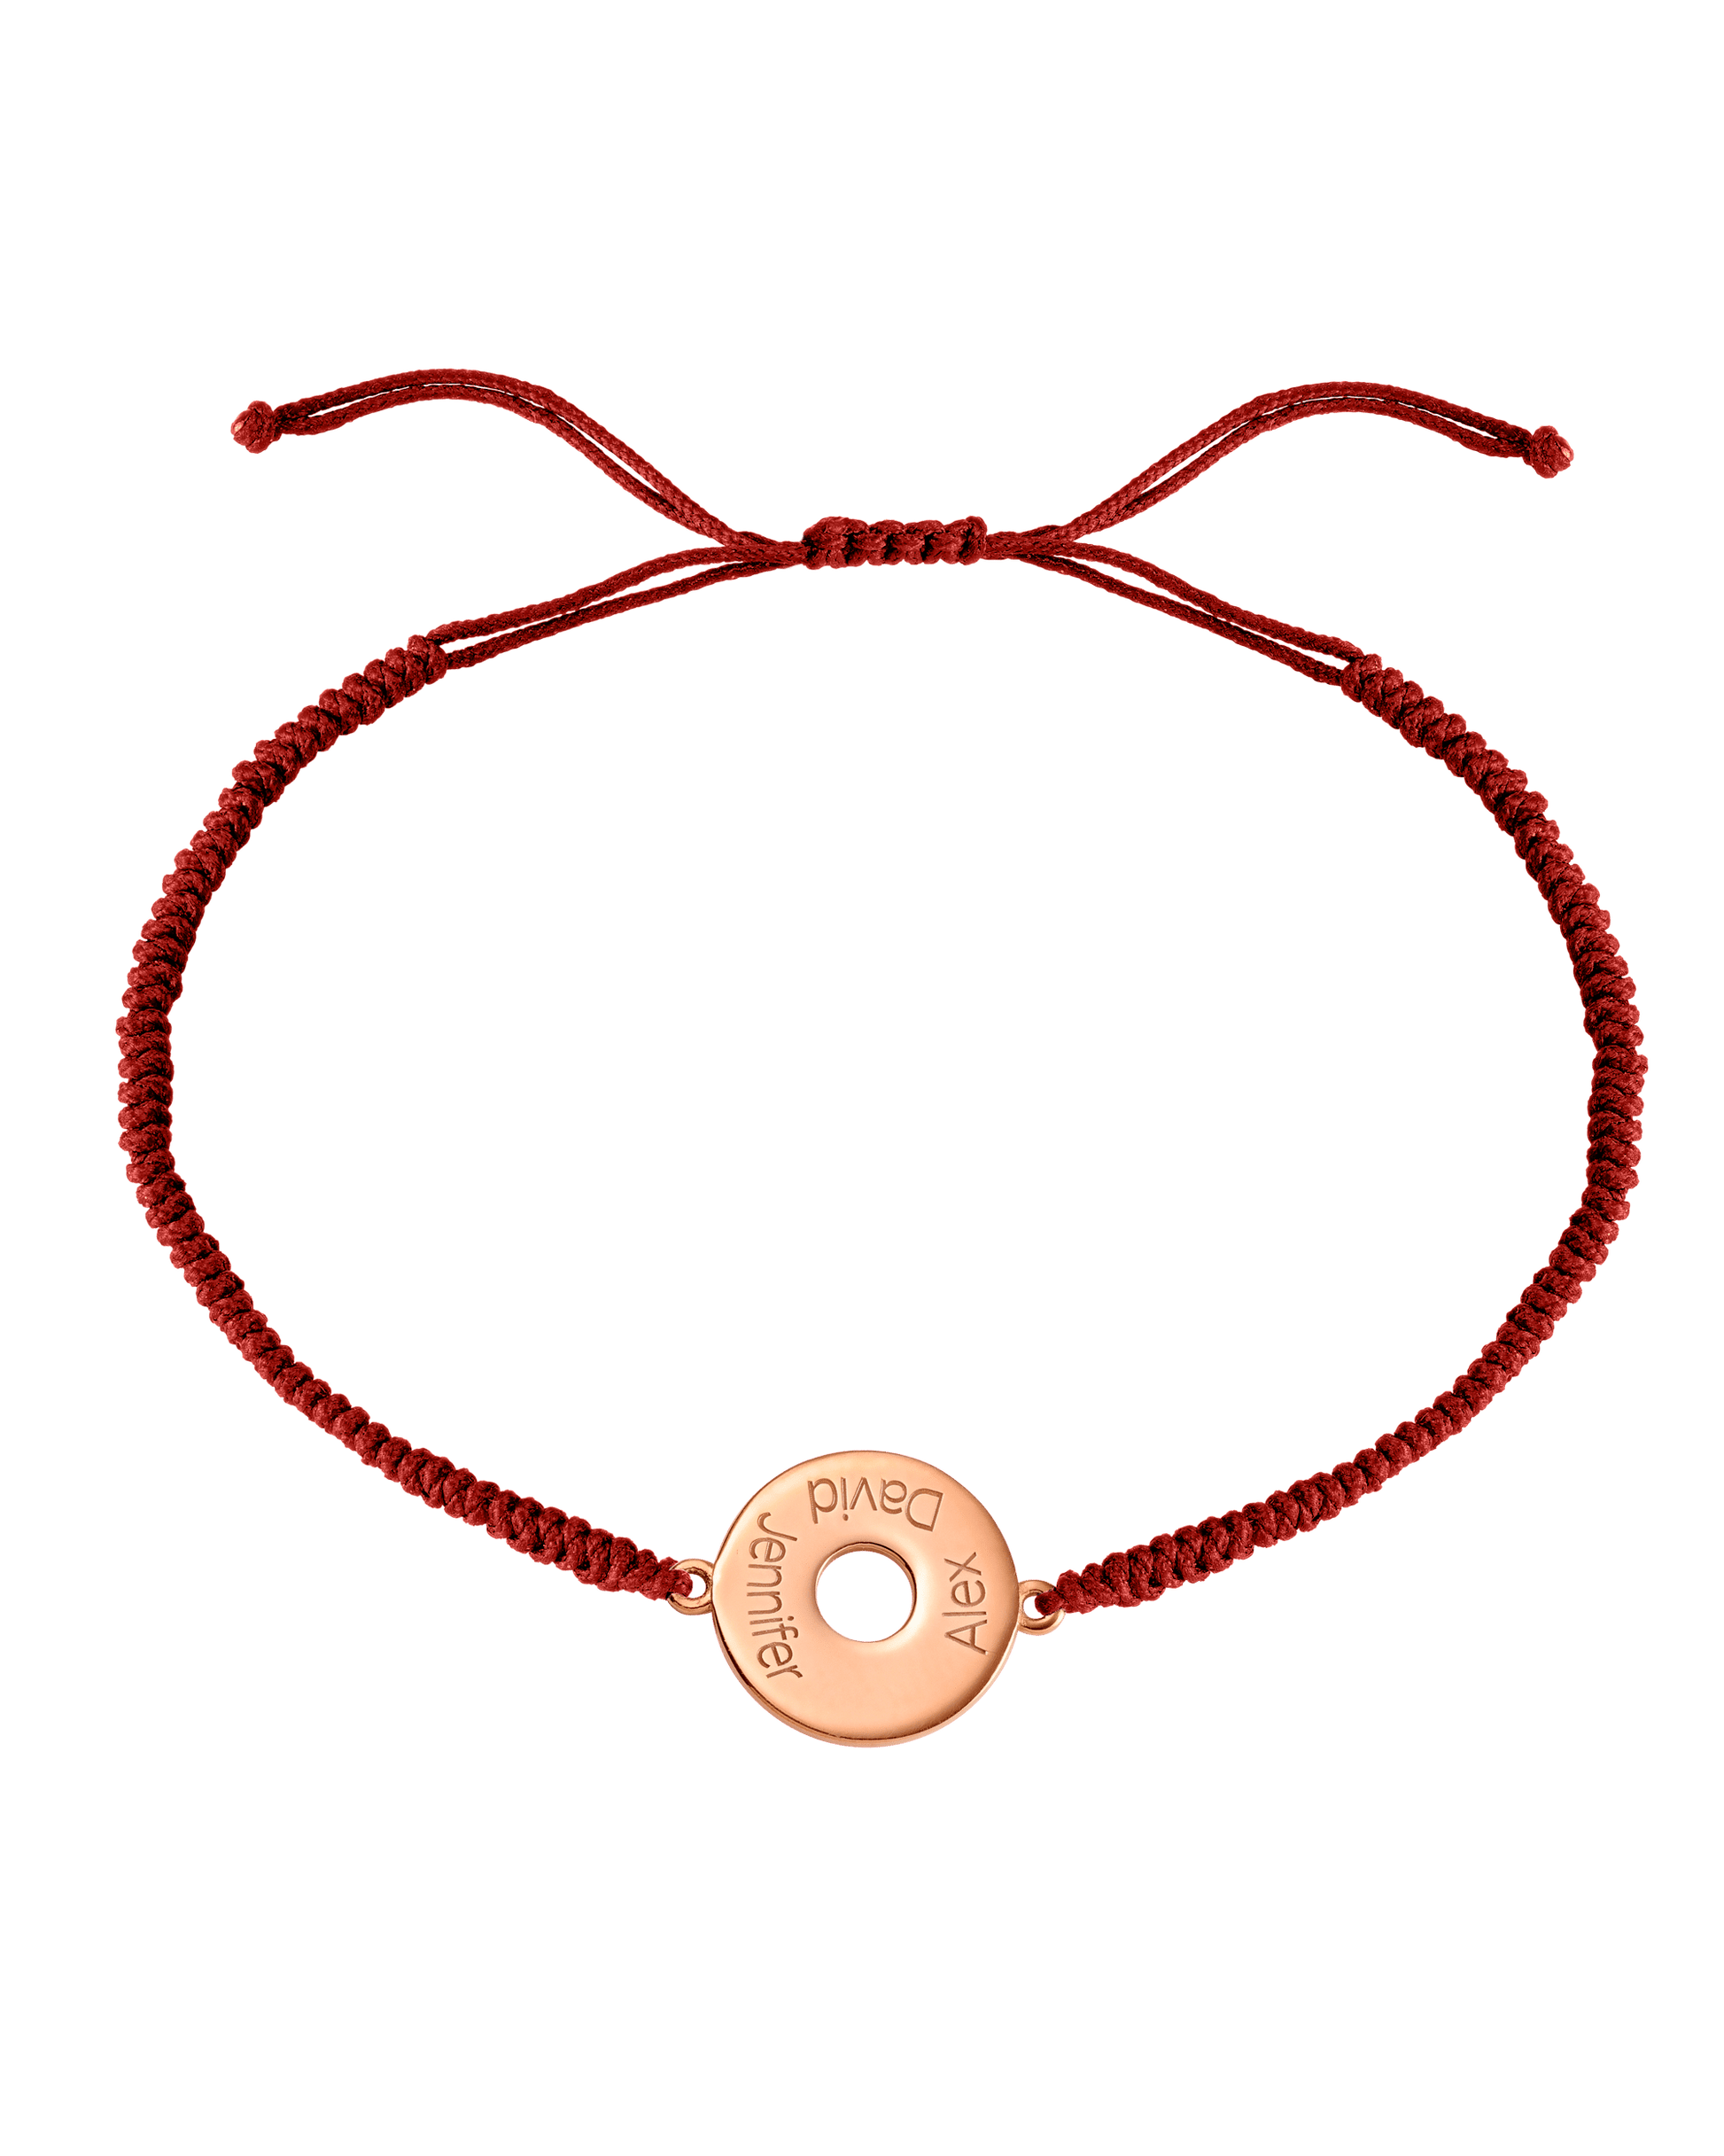 Donut Cord Bracelet - 18K Rose Vermeil Bracelets magal-dev Red 1 Names Adjustable from 4" to 9"